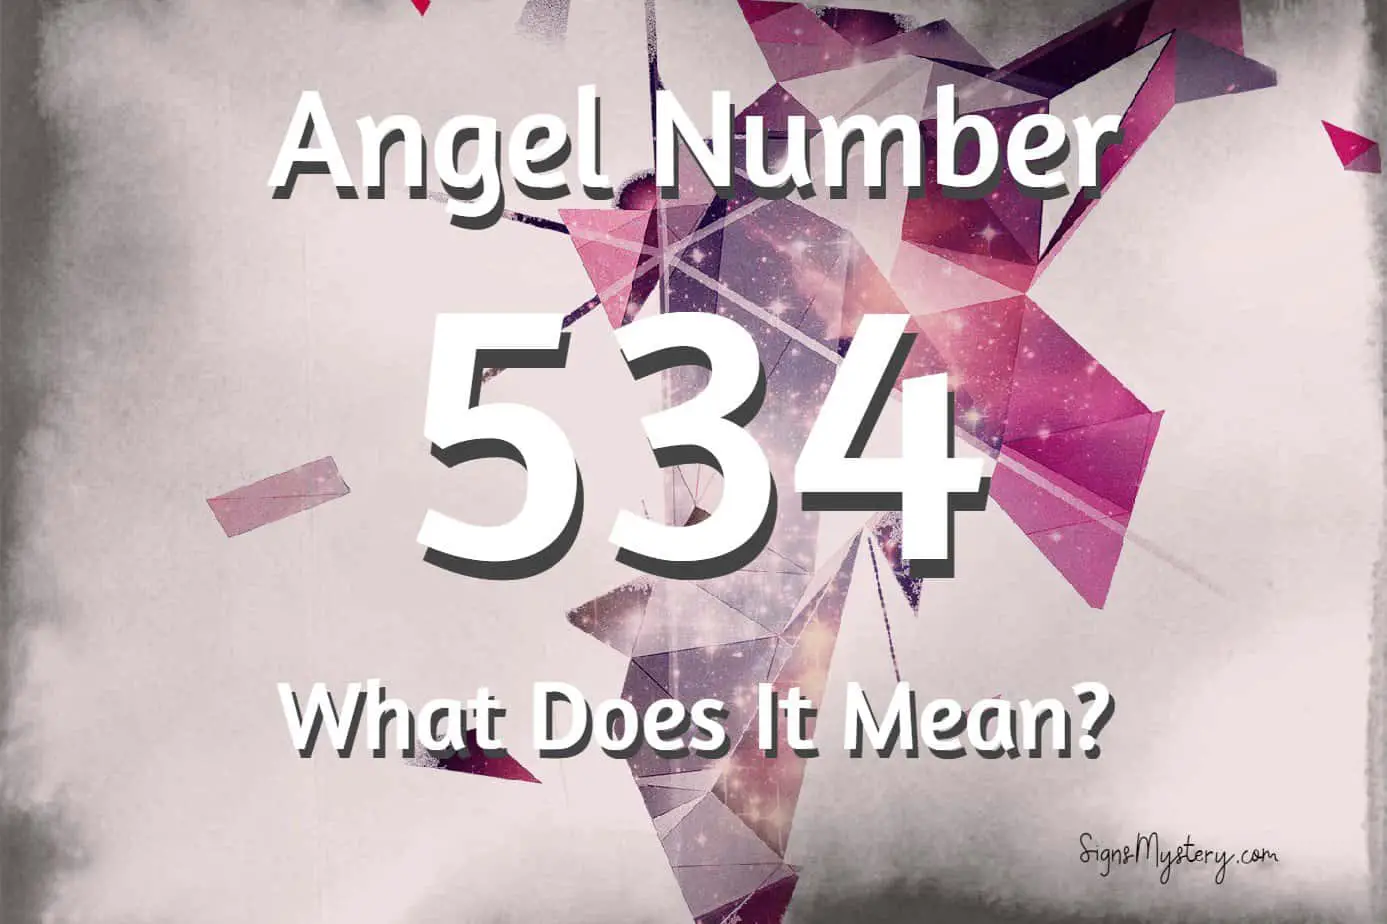 534 angel number